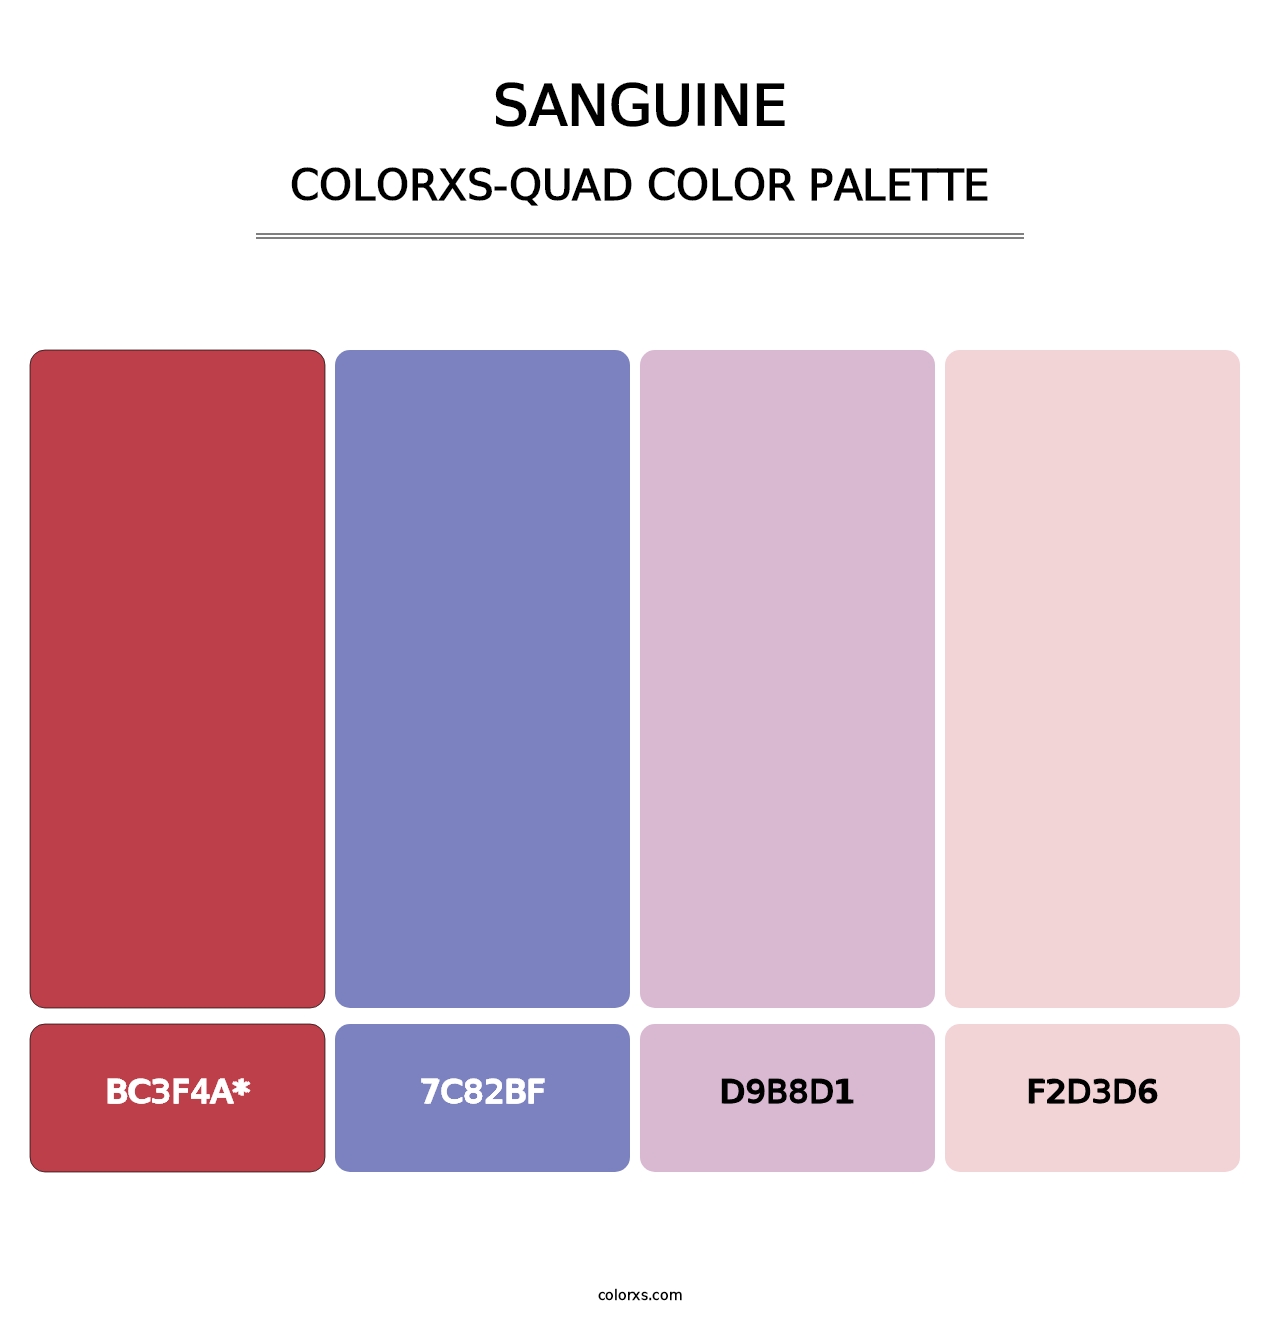 Sanguine - Colorxs Quad Palette